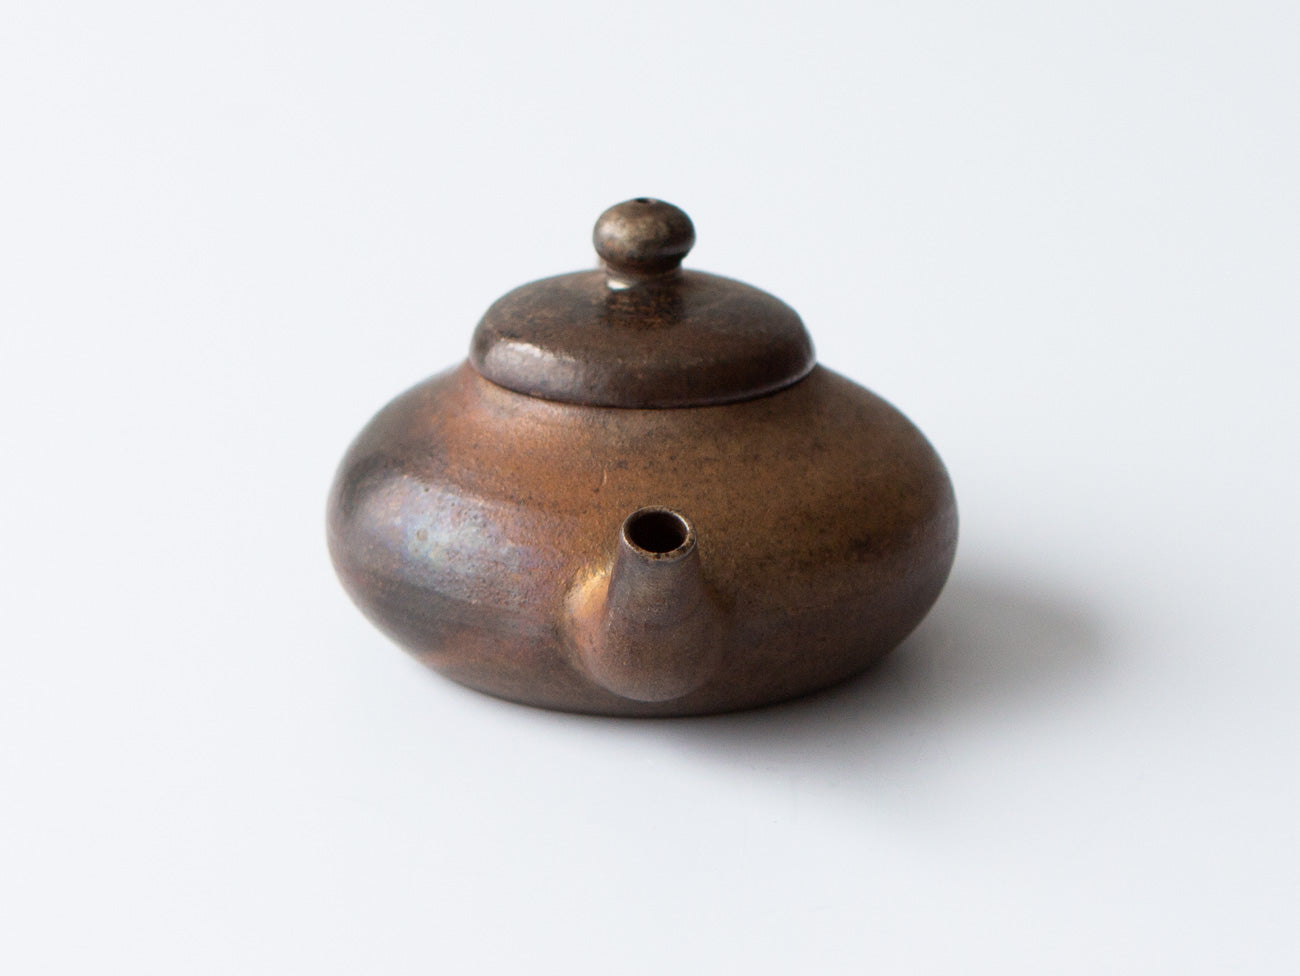 Bronze Teapot, No. 1